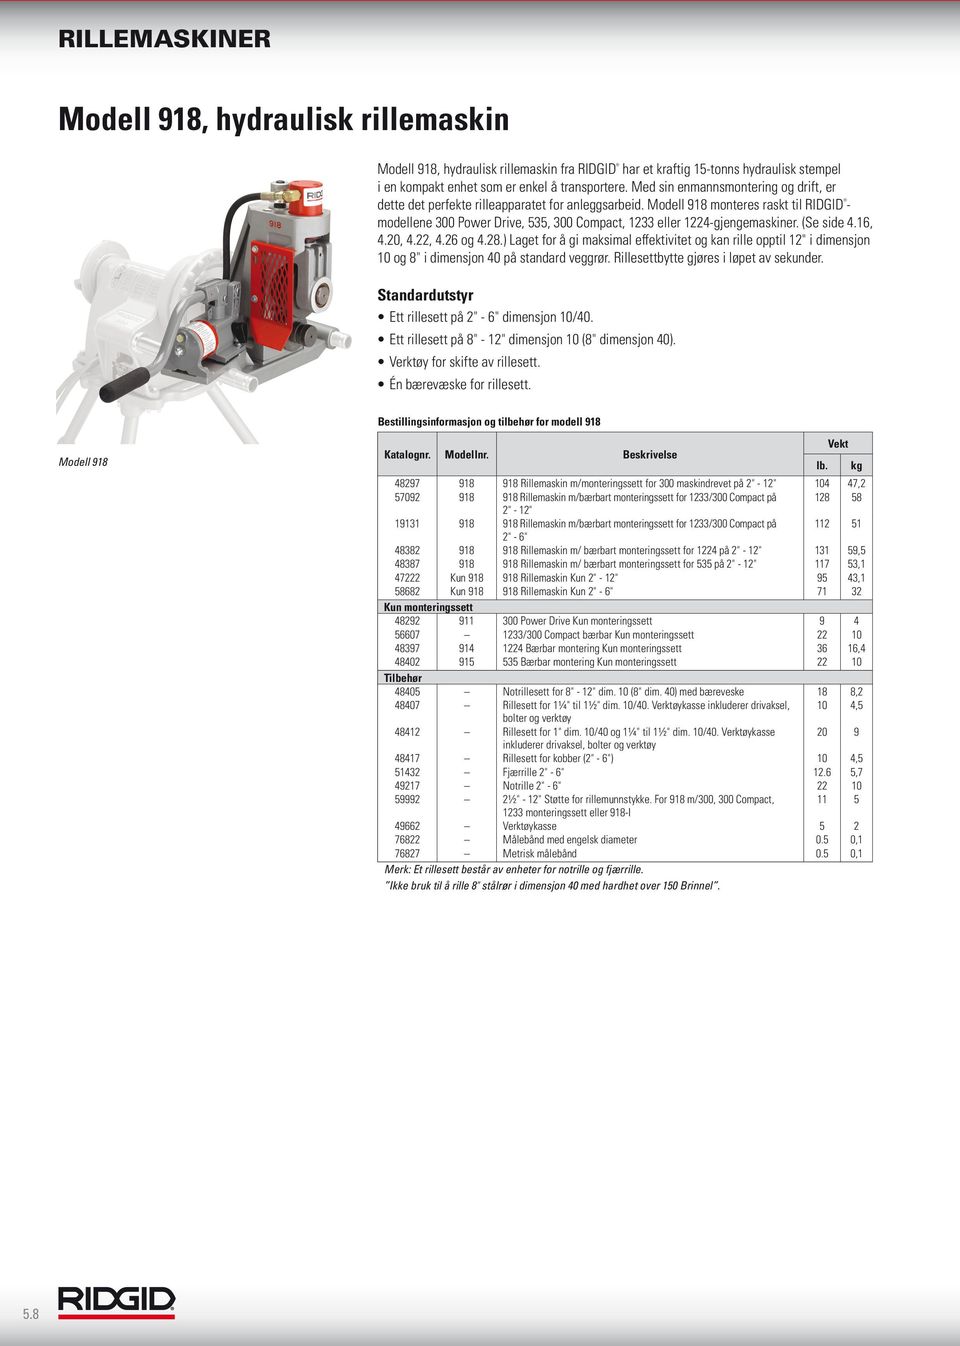 Modell 918 monteres raskt til RIDGID - modellene 300 Power Drive, 535, 300 Compact, 1233 eller 1224-gjengemaskiner. (Se side 4.16, 4.20, 4.22, 4.26 og 4.28.